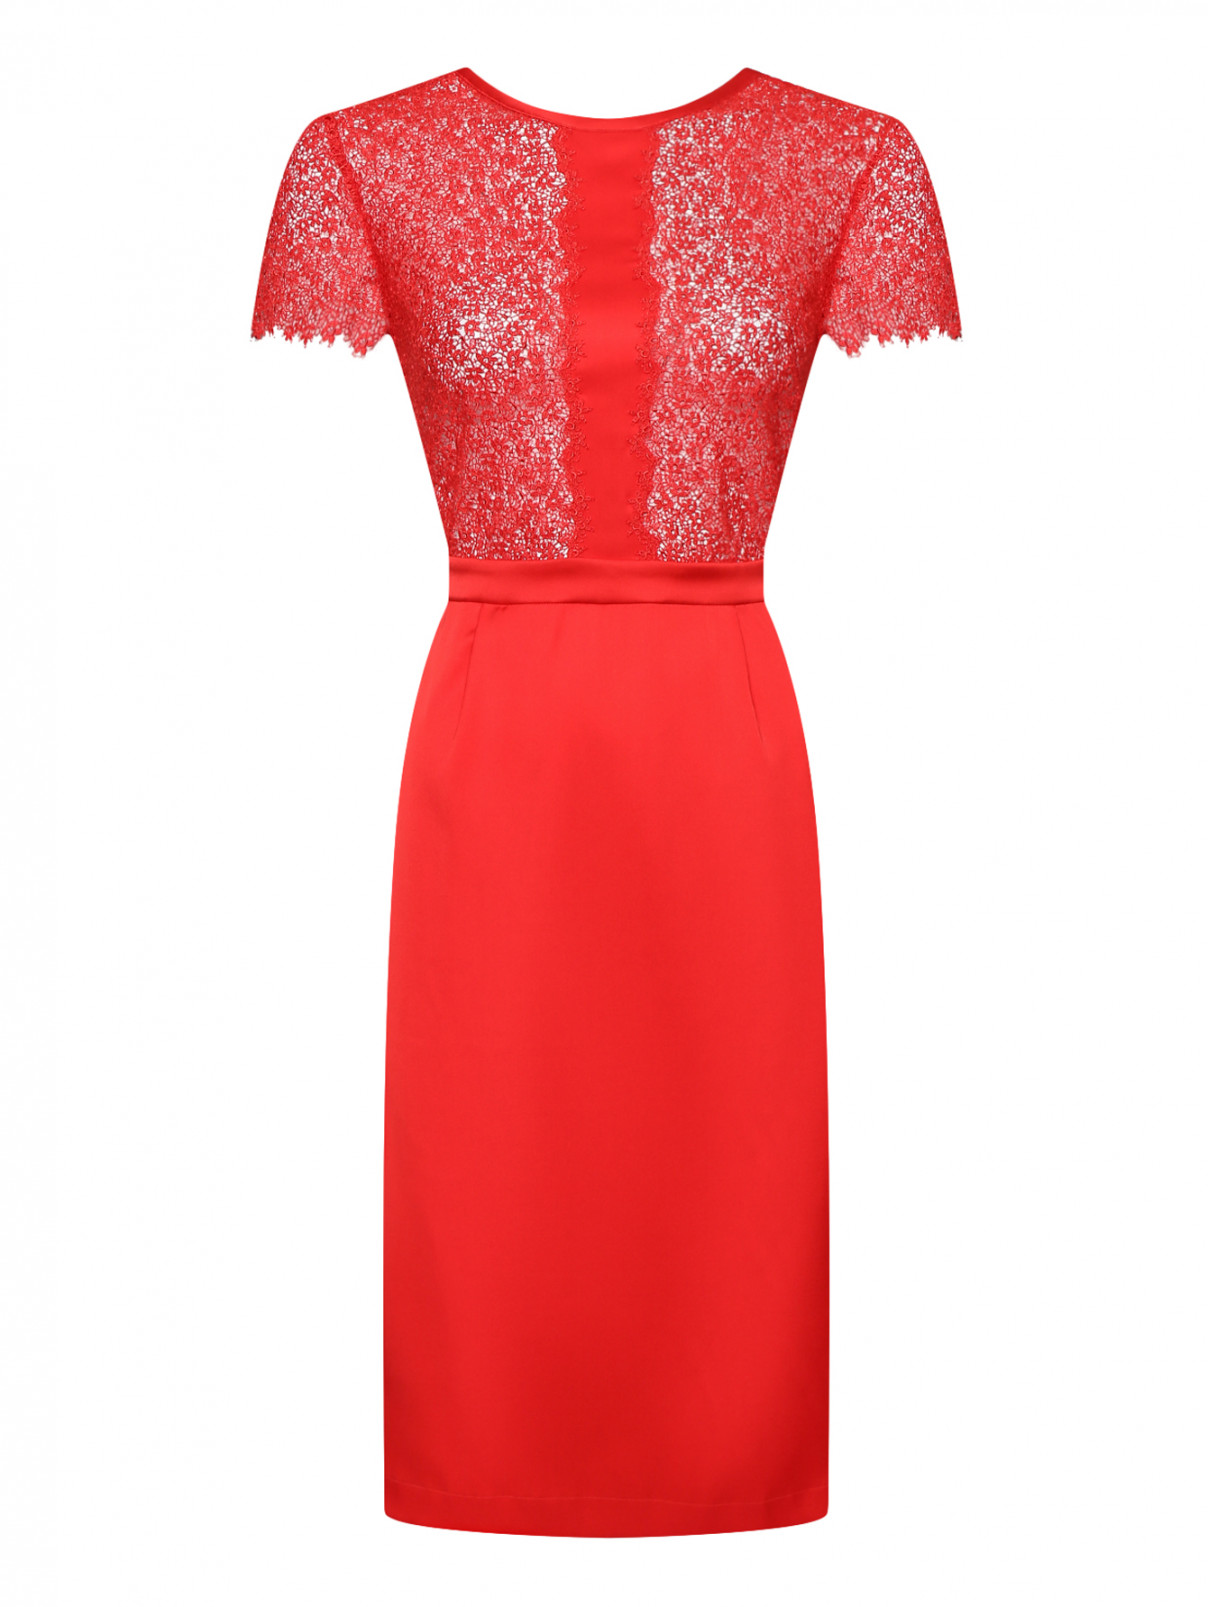 Шелковое платье с ажурной отделкой La Perla  –  Общий вид  – Цвет:  Красный